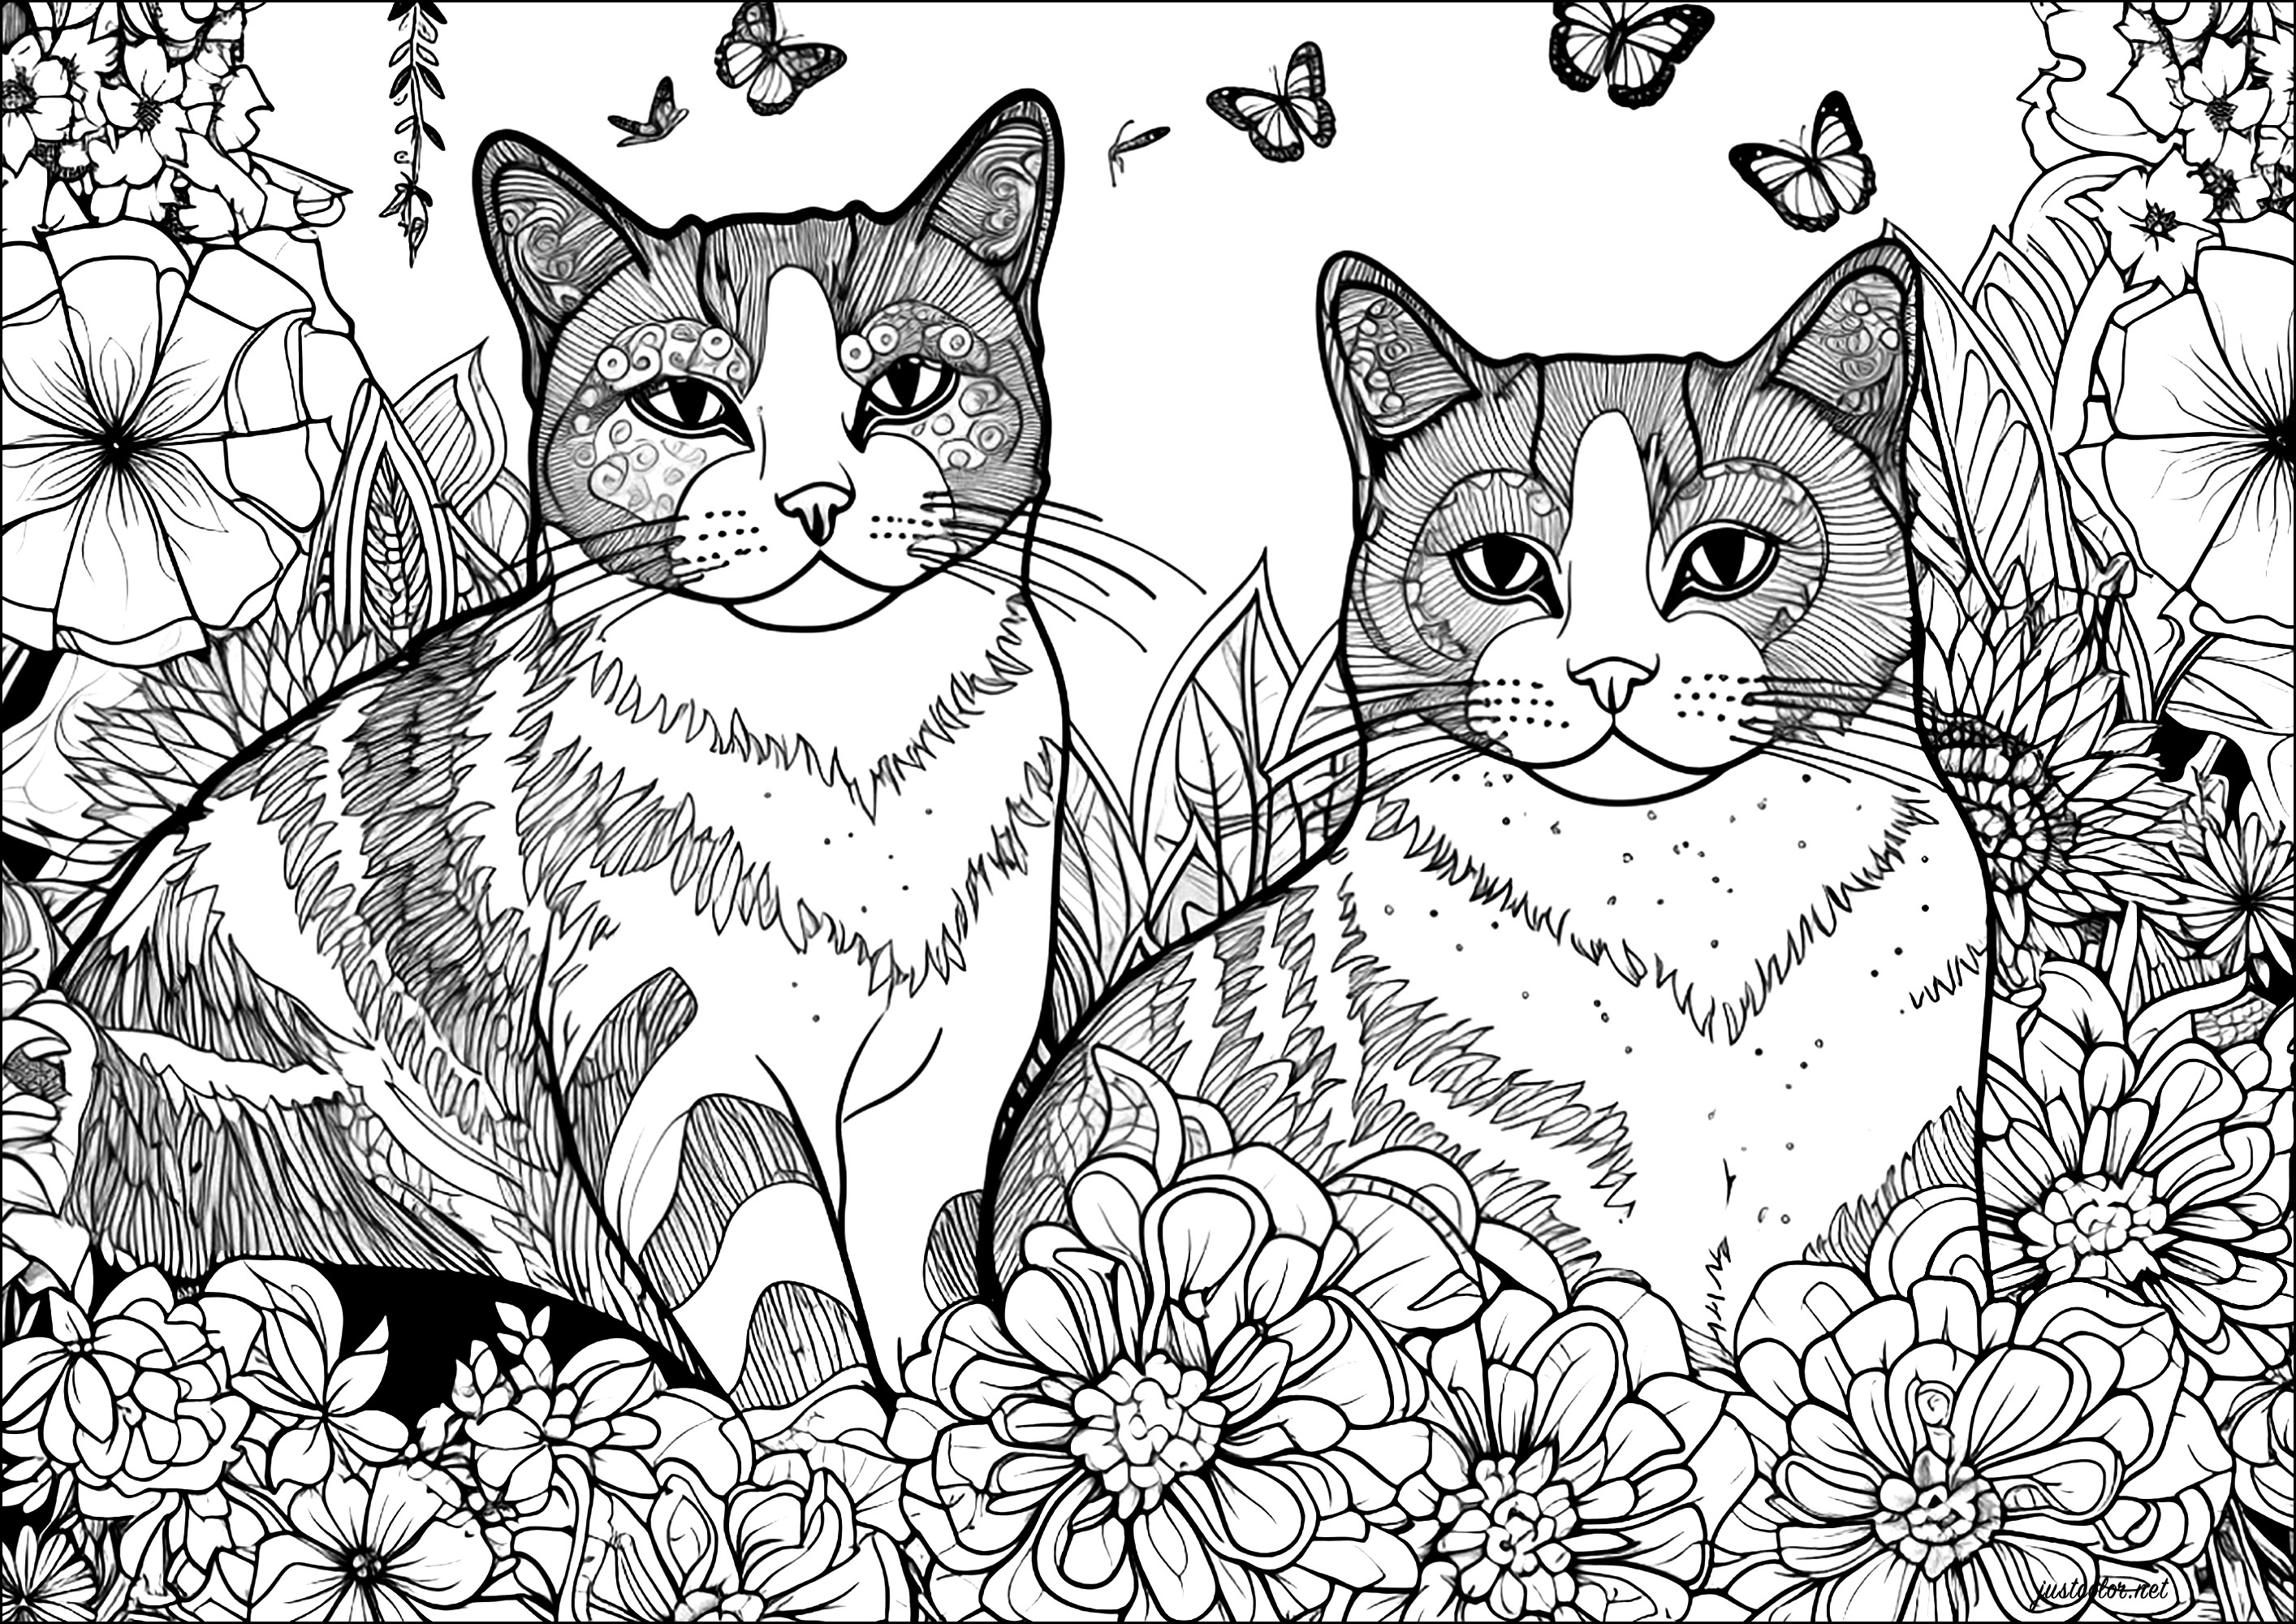 Dos gatos con flores y mariposas. Un diseño complejo lleno de bonitos detalles